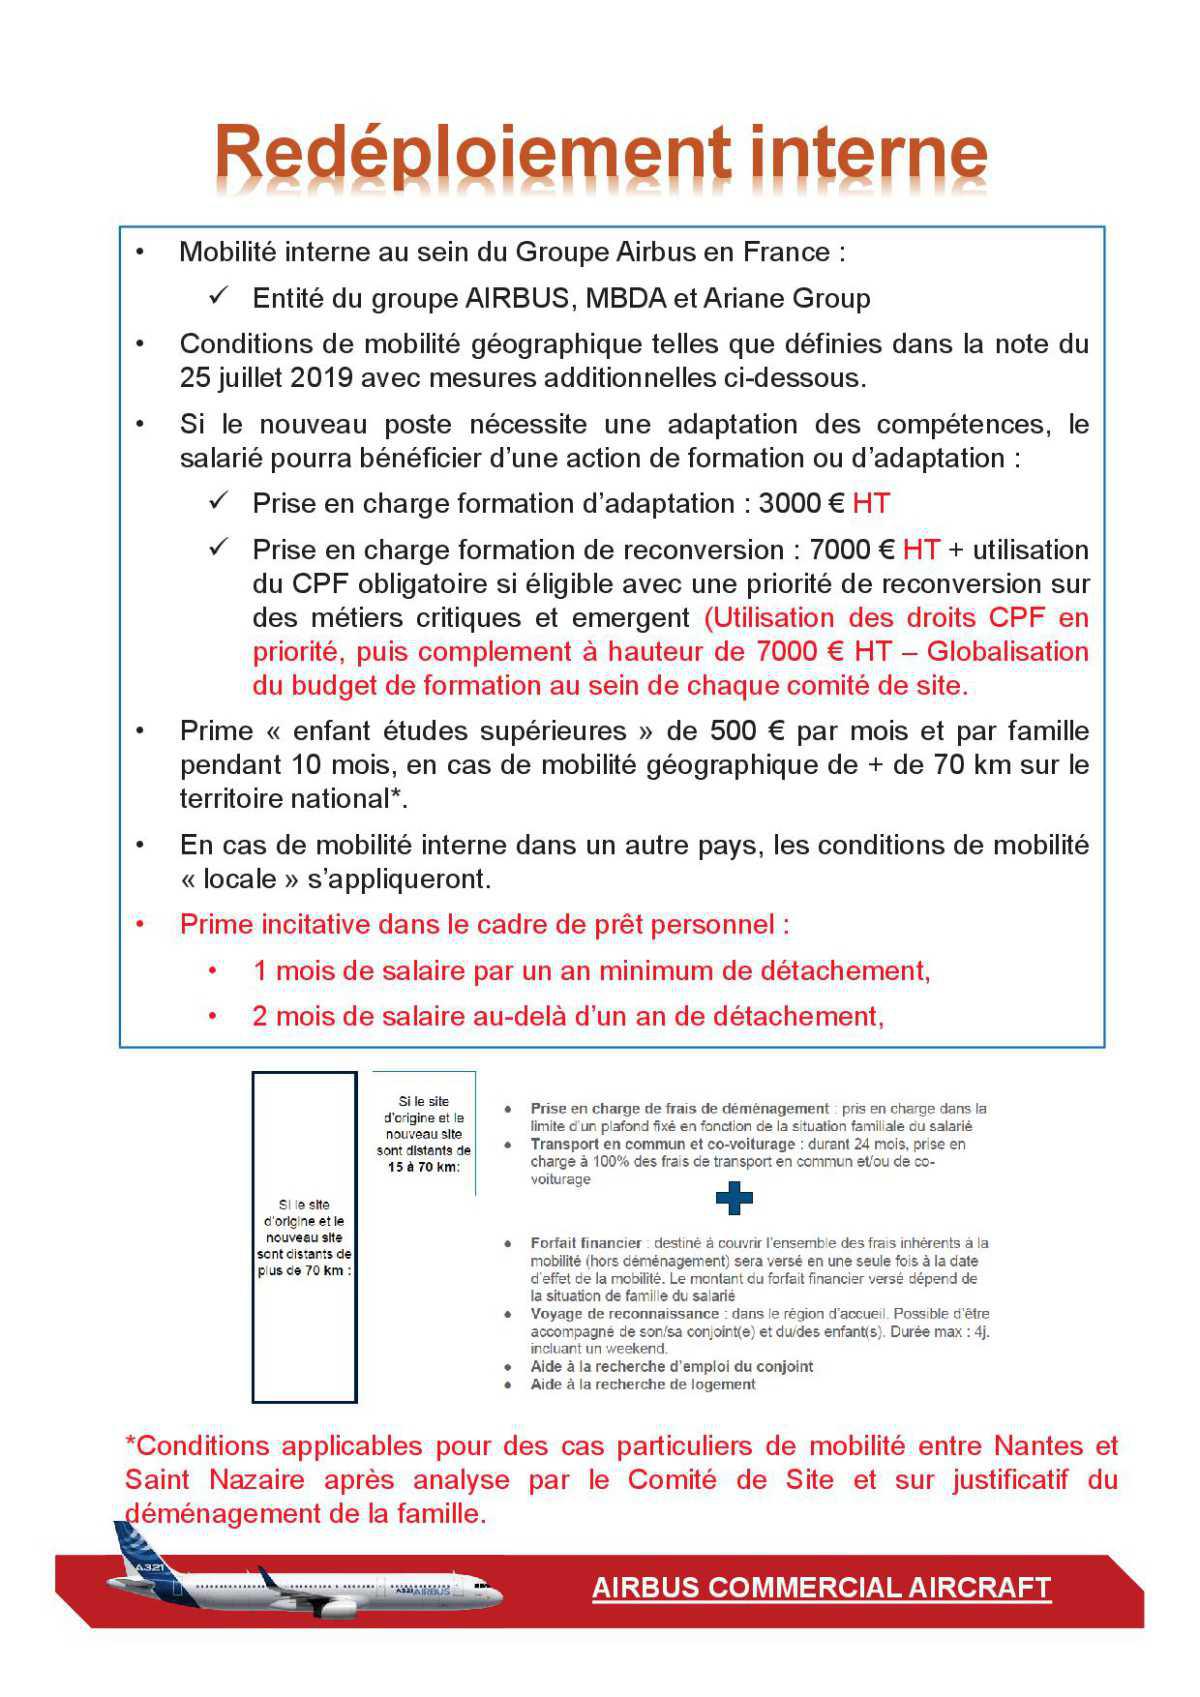 Accord Majoritaire - Réunion N°3- Détail des mesures